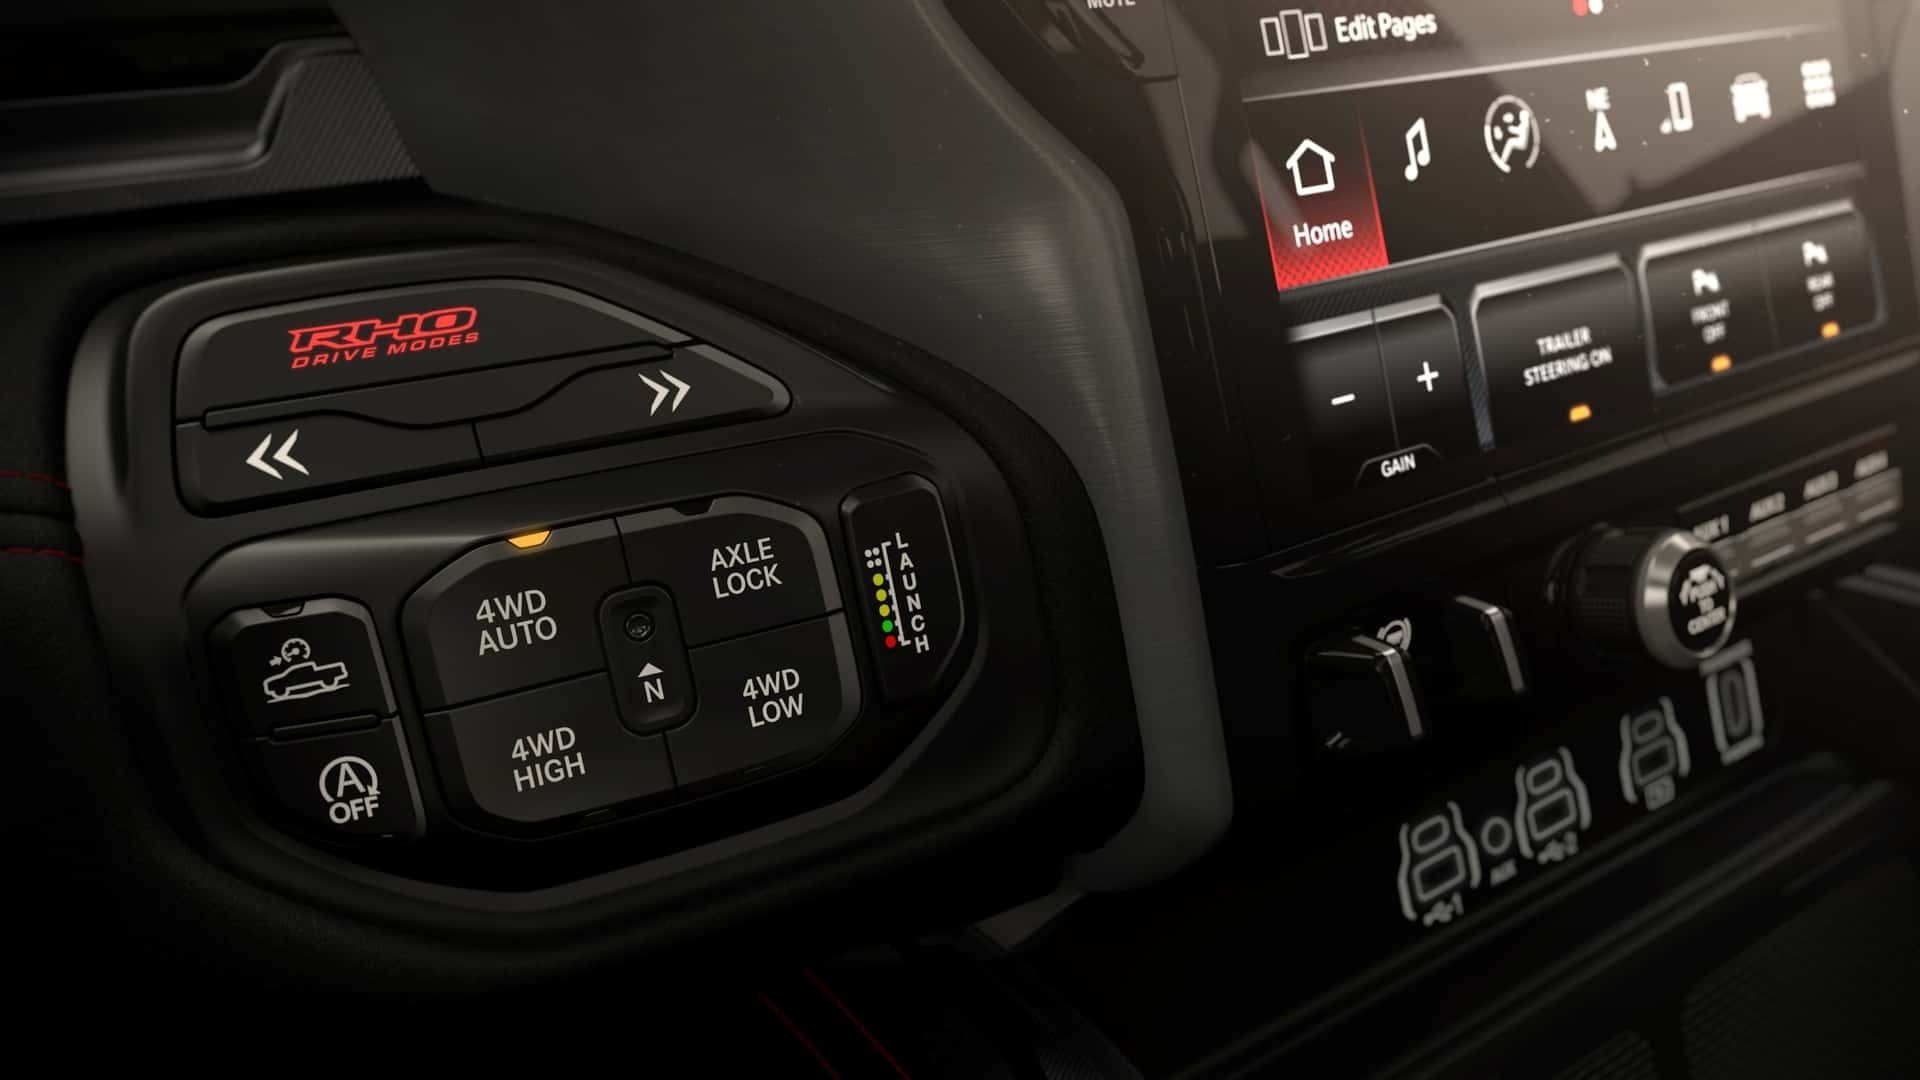 دکمه‌های کنترلی روی فرمان خودرو رم 1500 RHO 